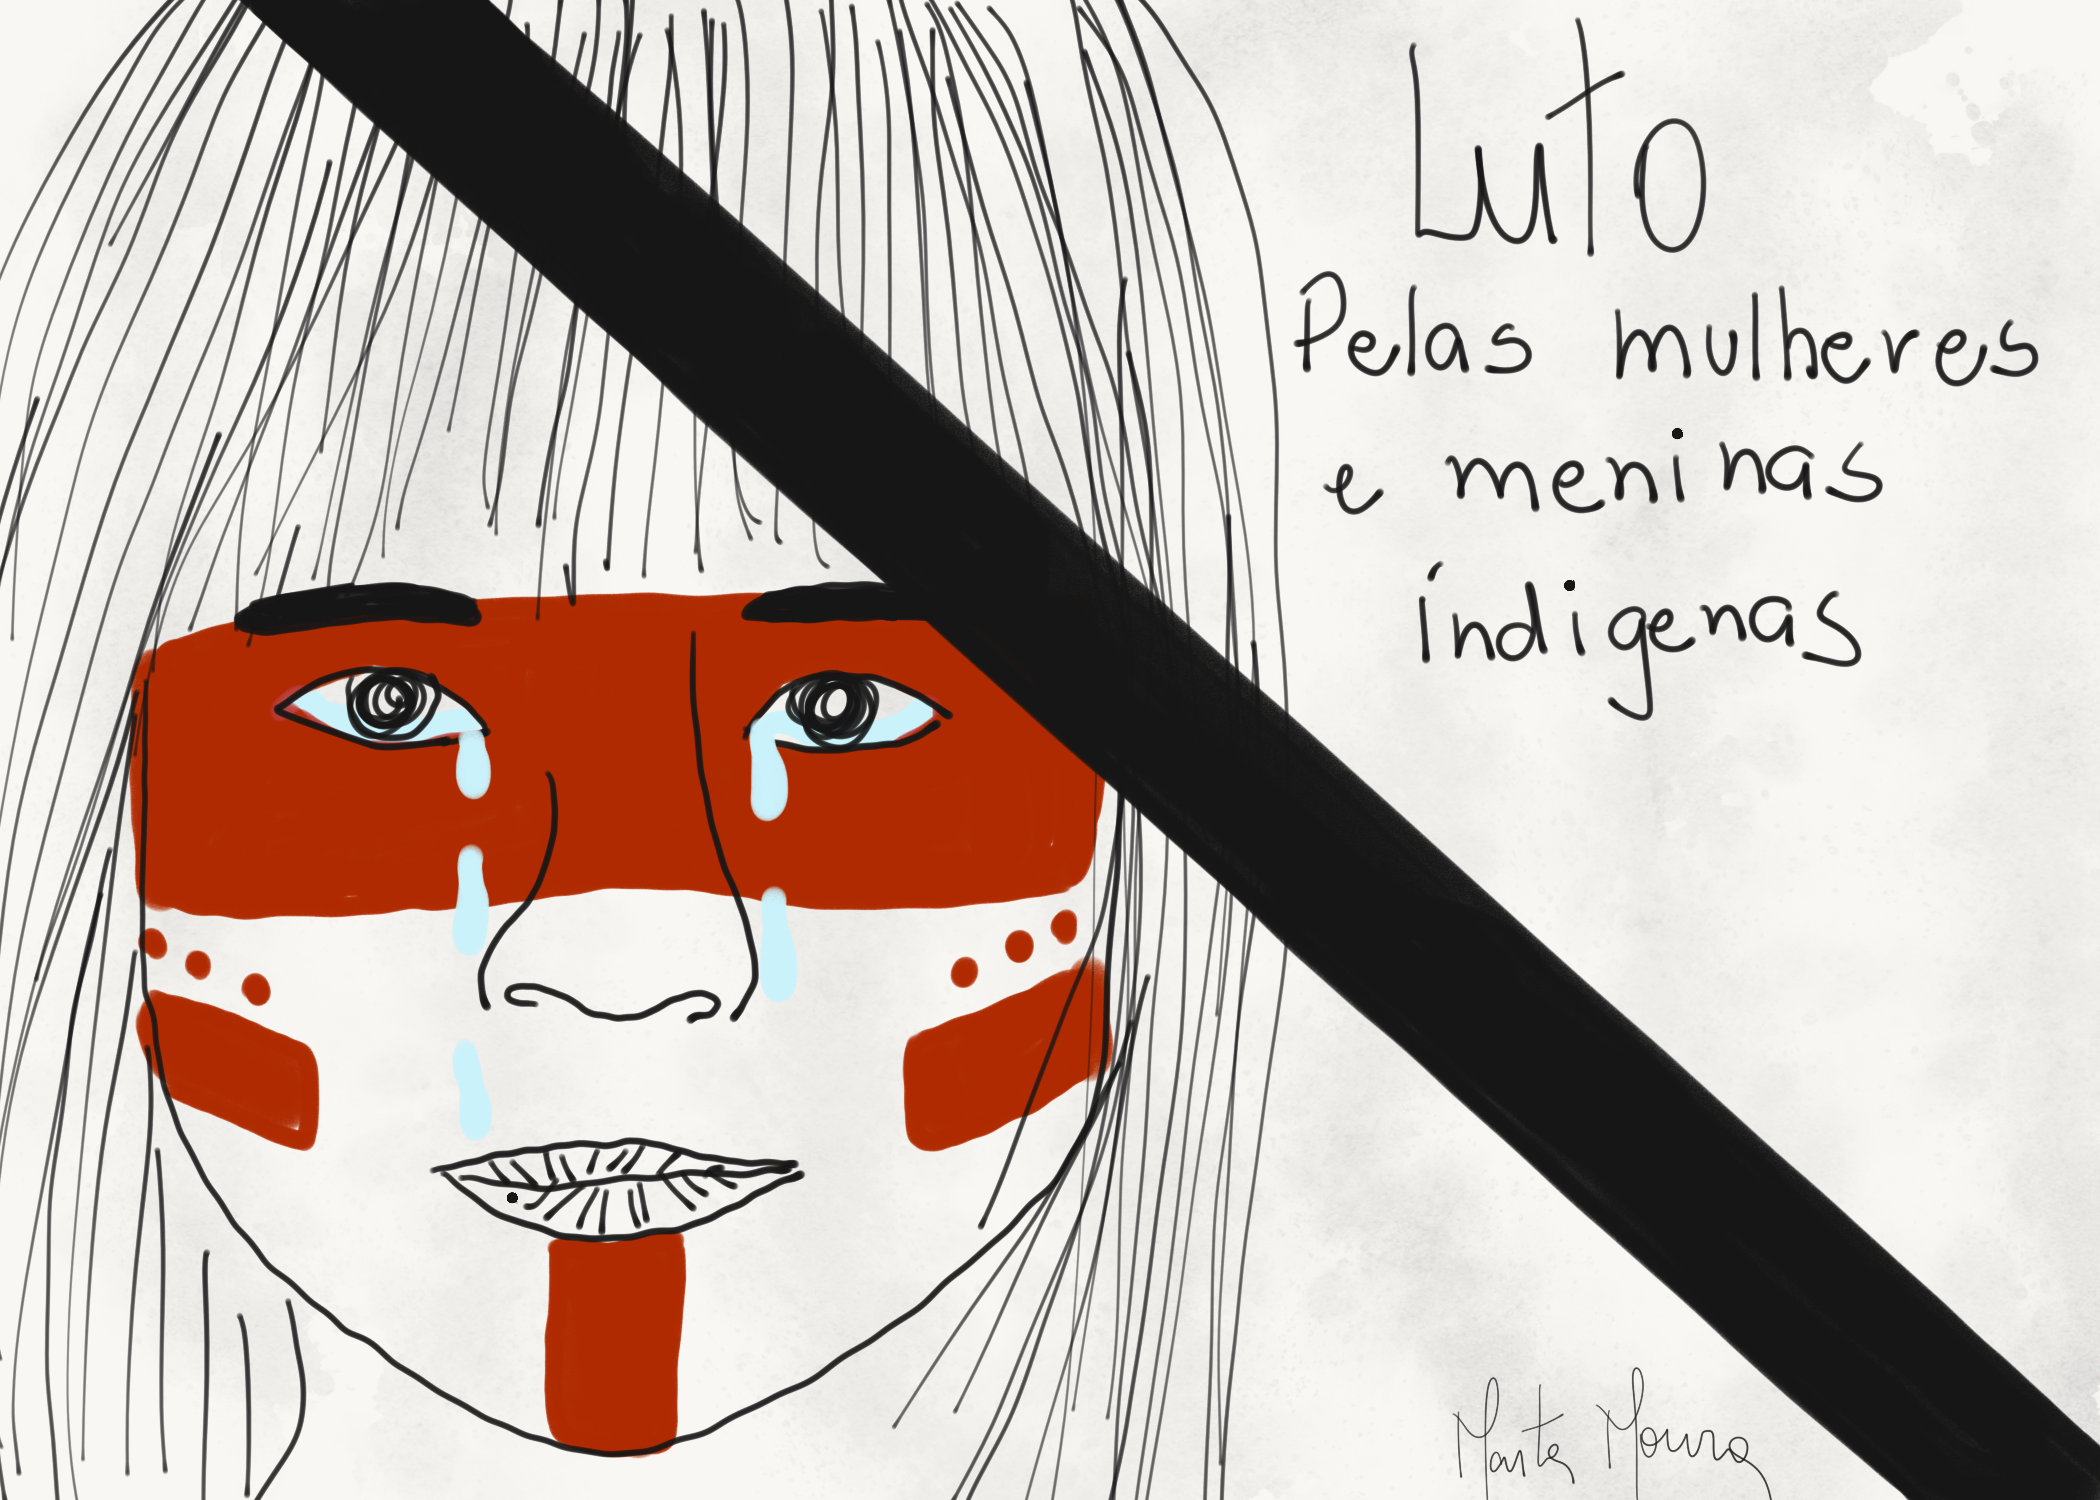 Ilustração de uma criança indígena com pinturas vermelhas no rosto. No canto superior direito, há o texto: "Luto pelas mulheres e meninas indígenas"